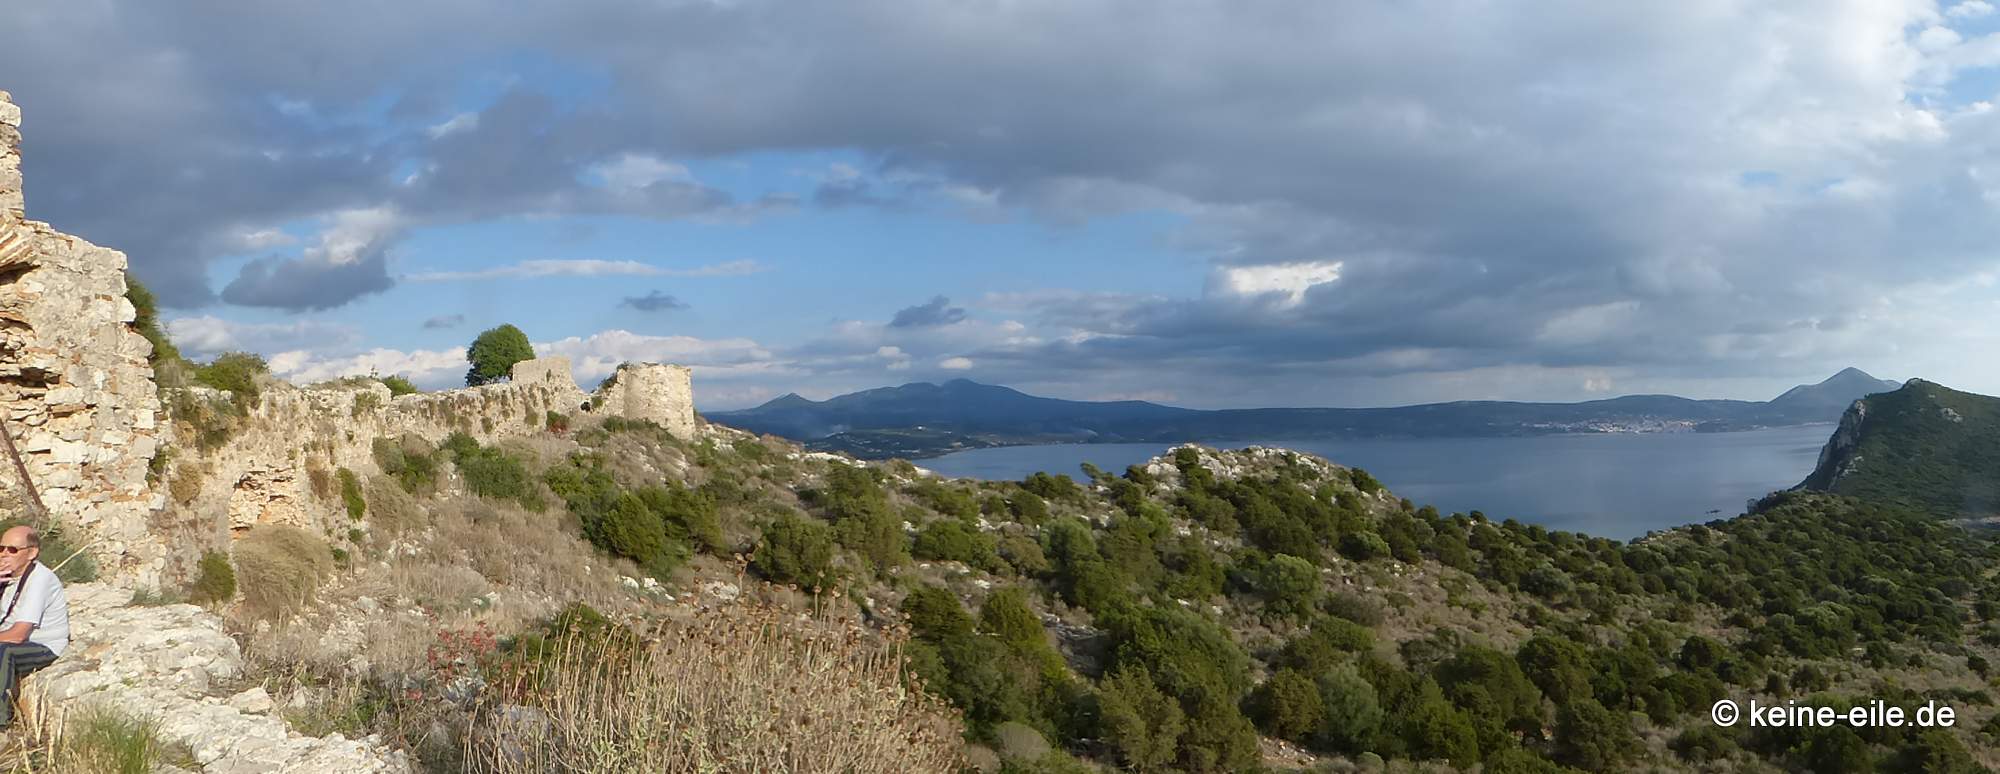 Reisebericht Griechenland: Die Bucht von Navarino